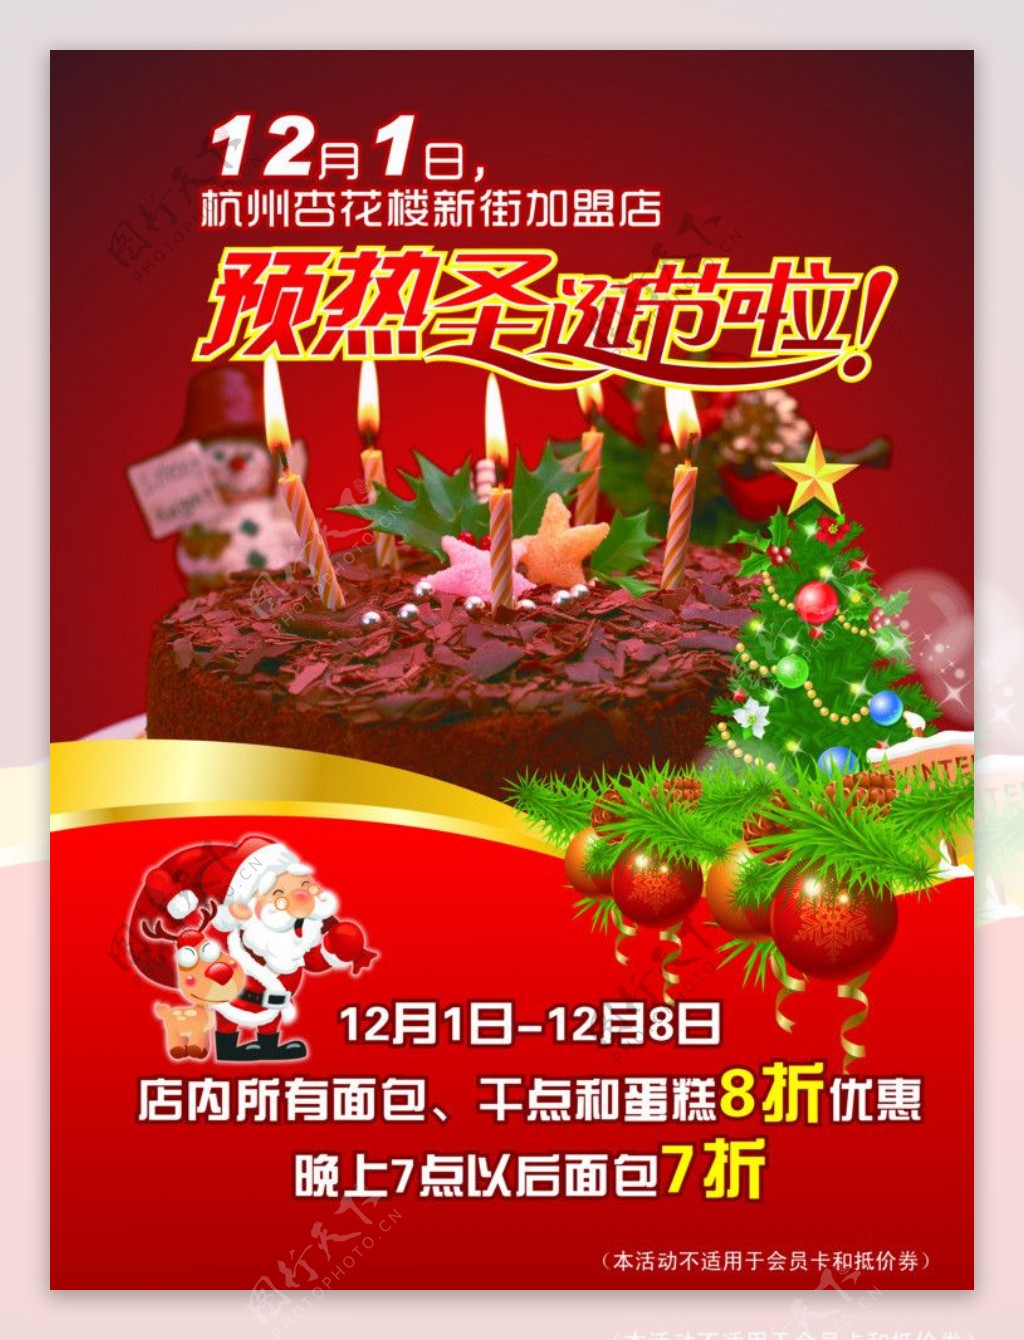 蛋糕店圣诞节促销海报图片